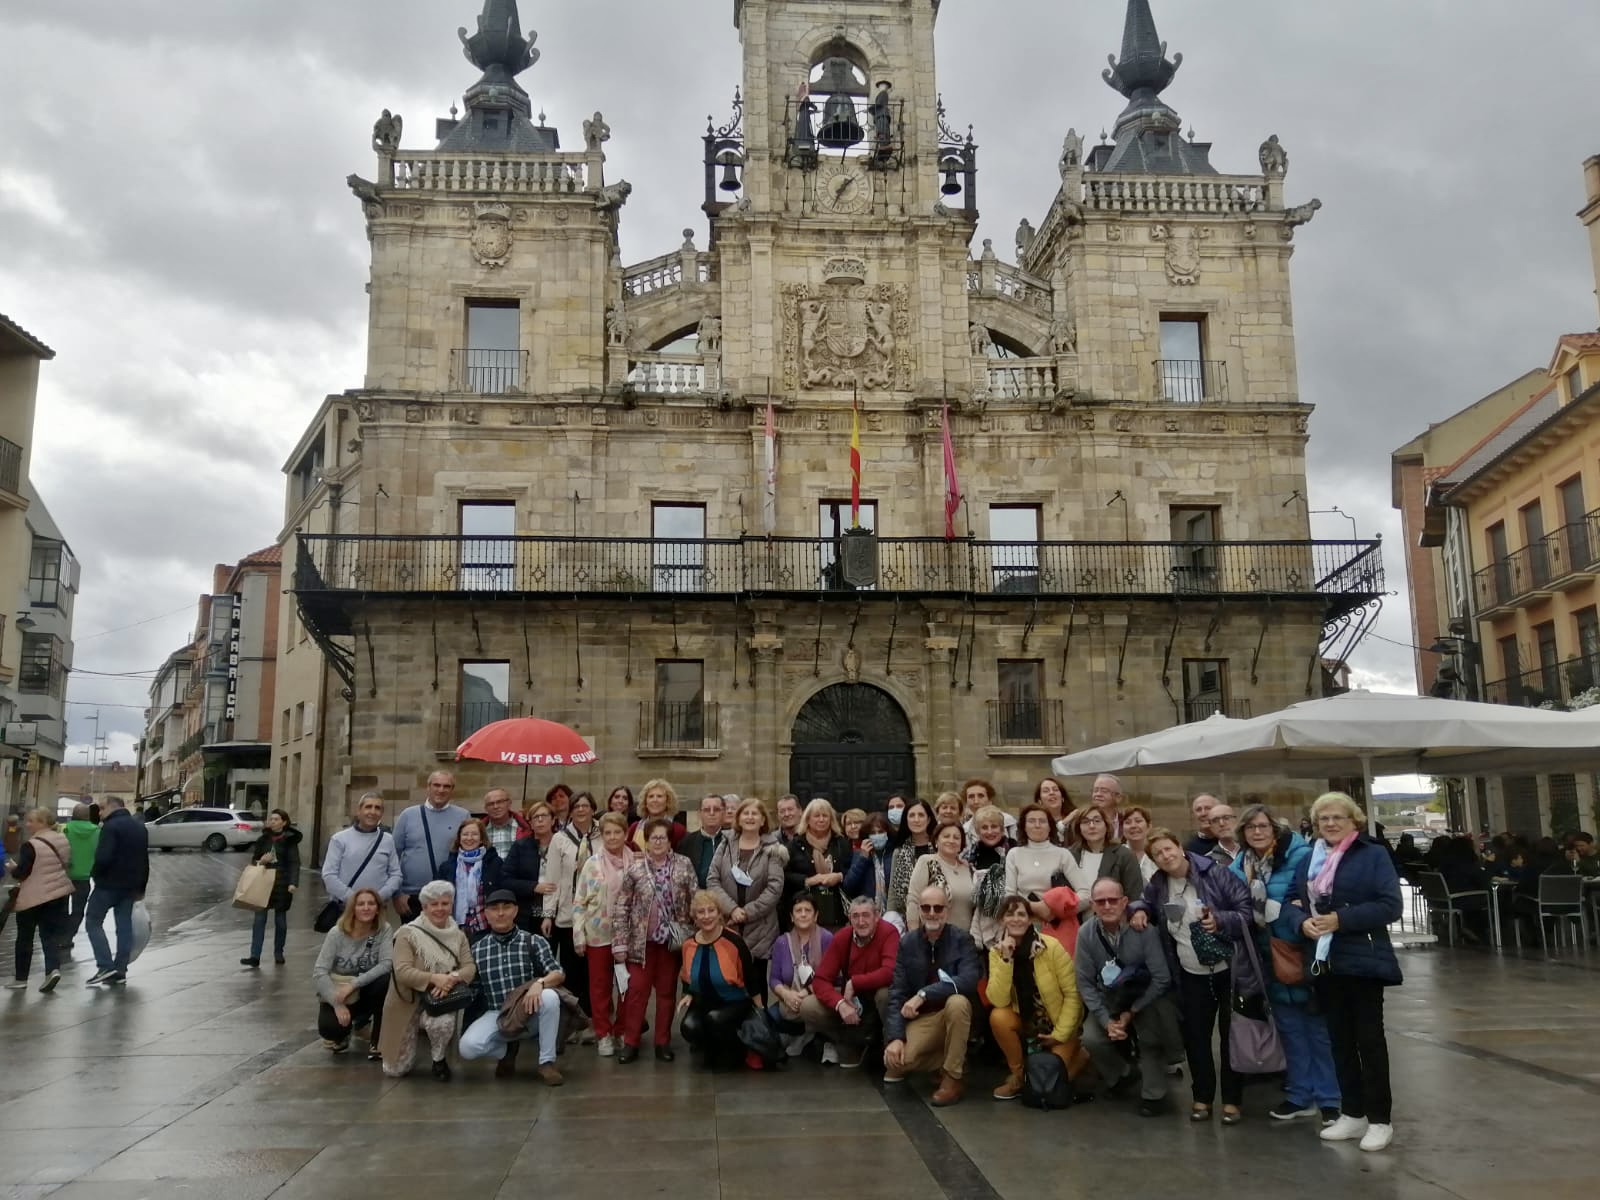 Visita guiada que combina los principales recursos turísticos de la ciudad de Astorga como son la Catedral, el Palacio Episcopal y el centro histórico.